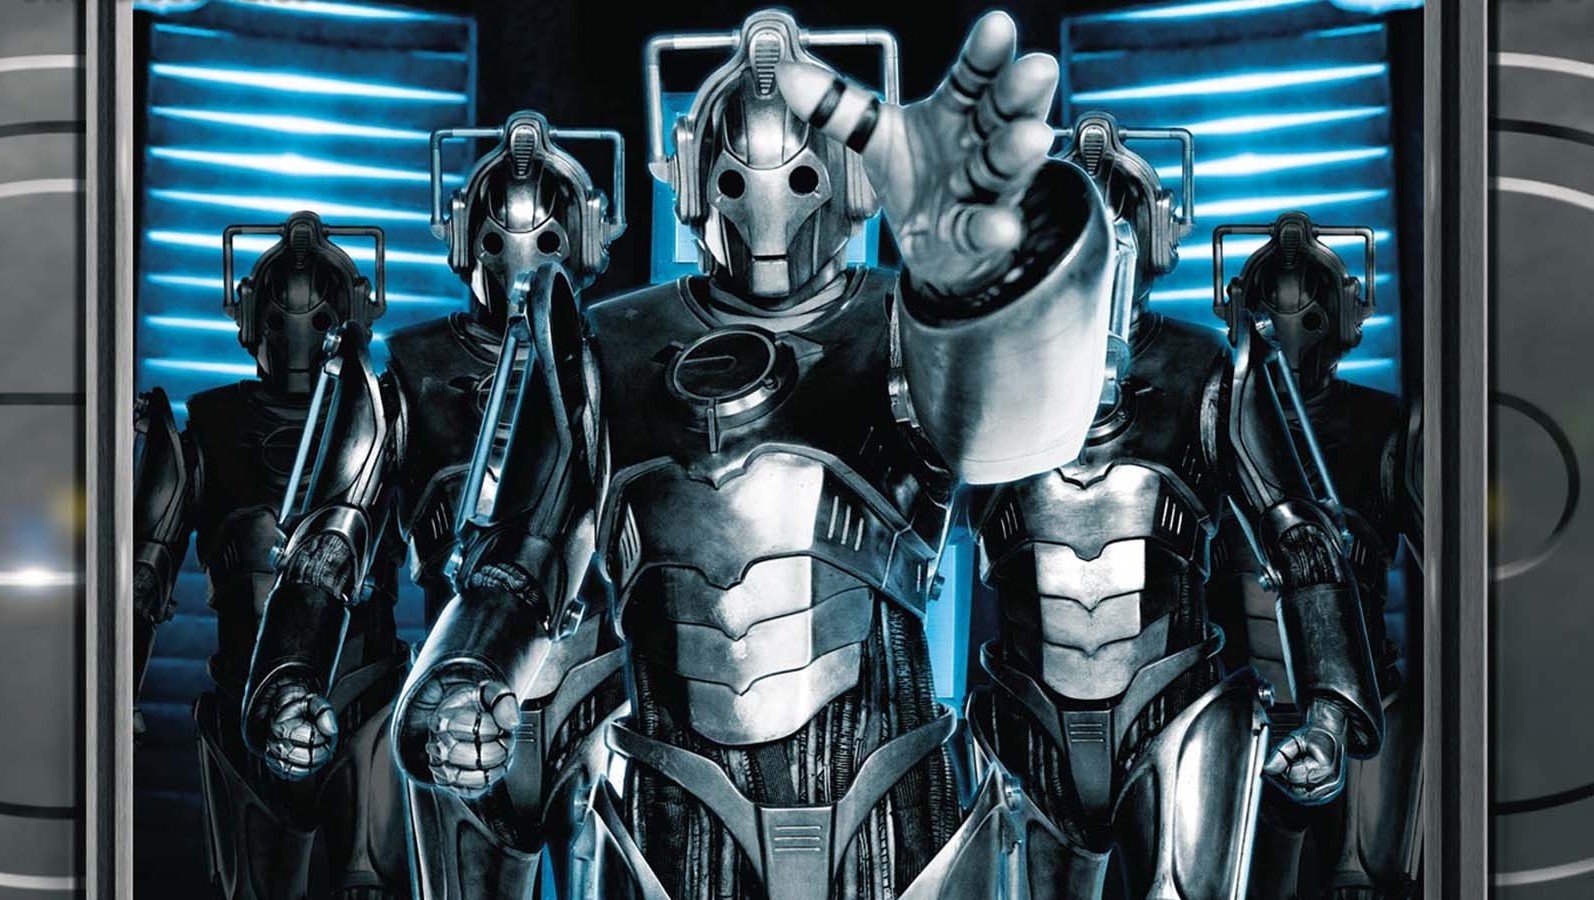 Doctor Who, Cyberman Wallpaper